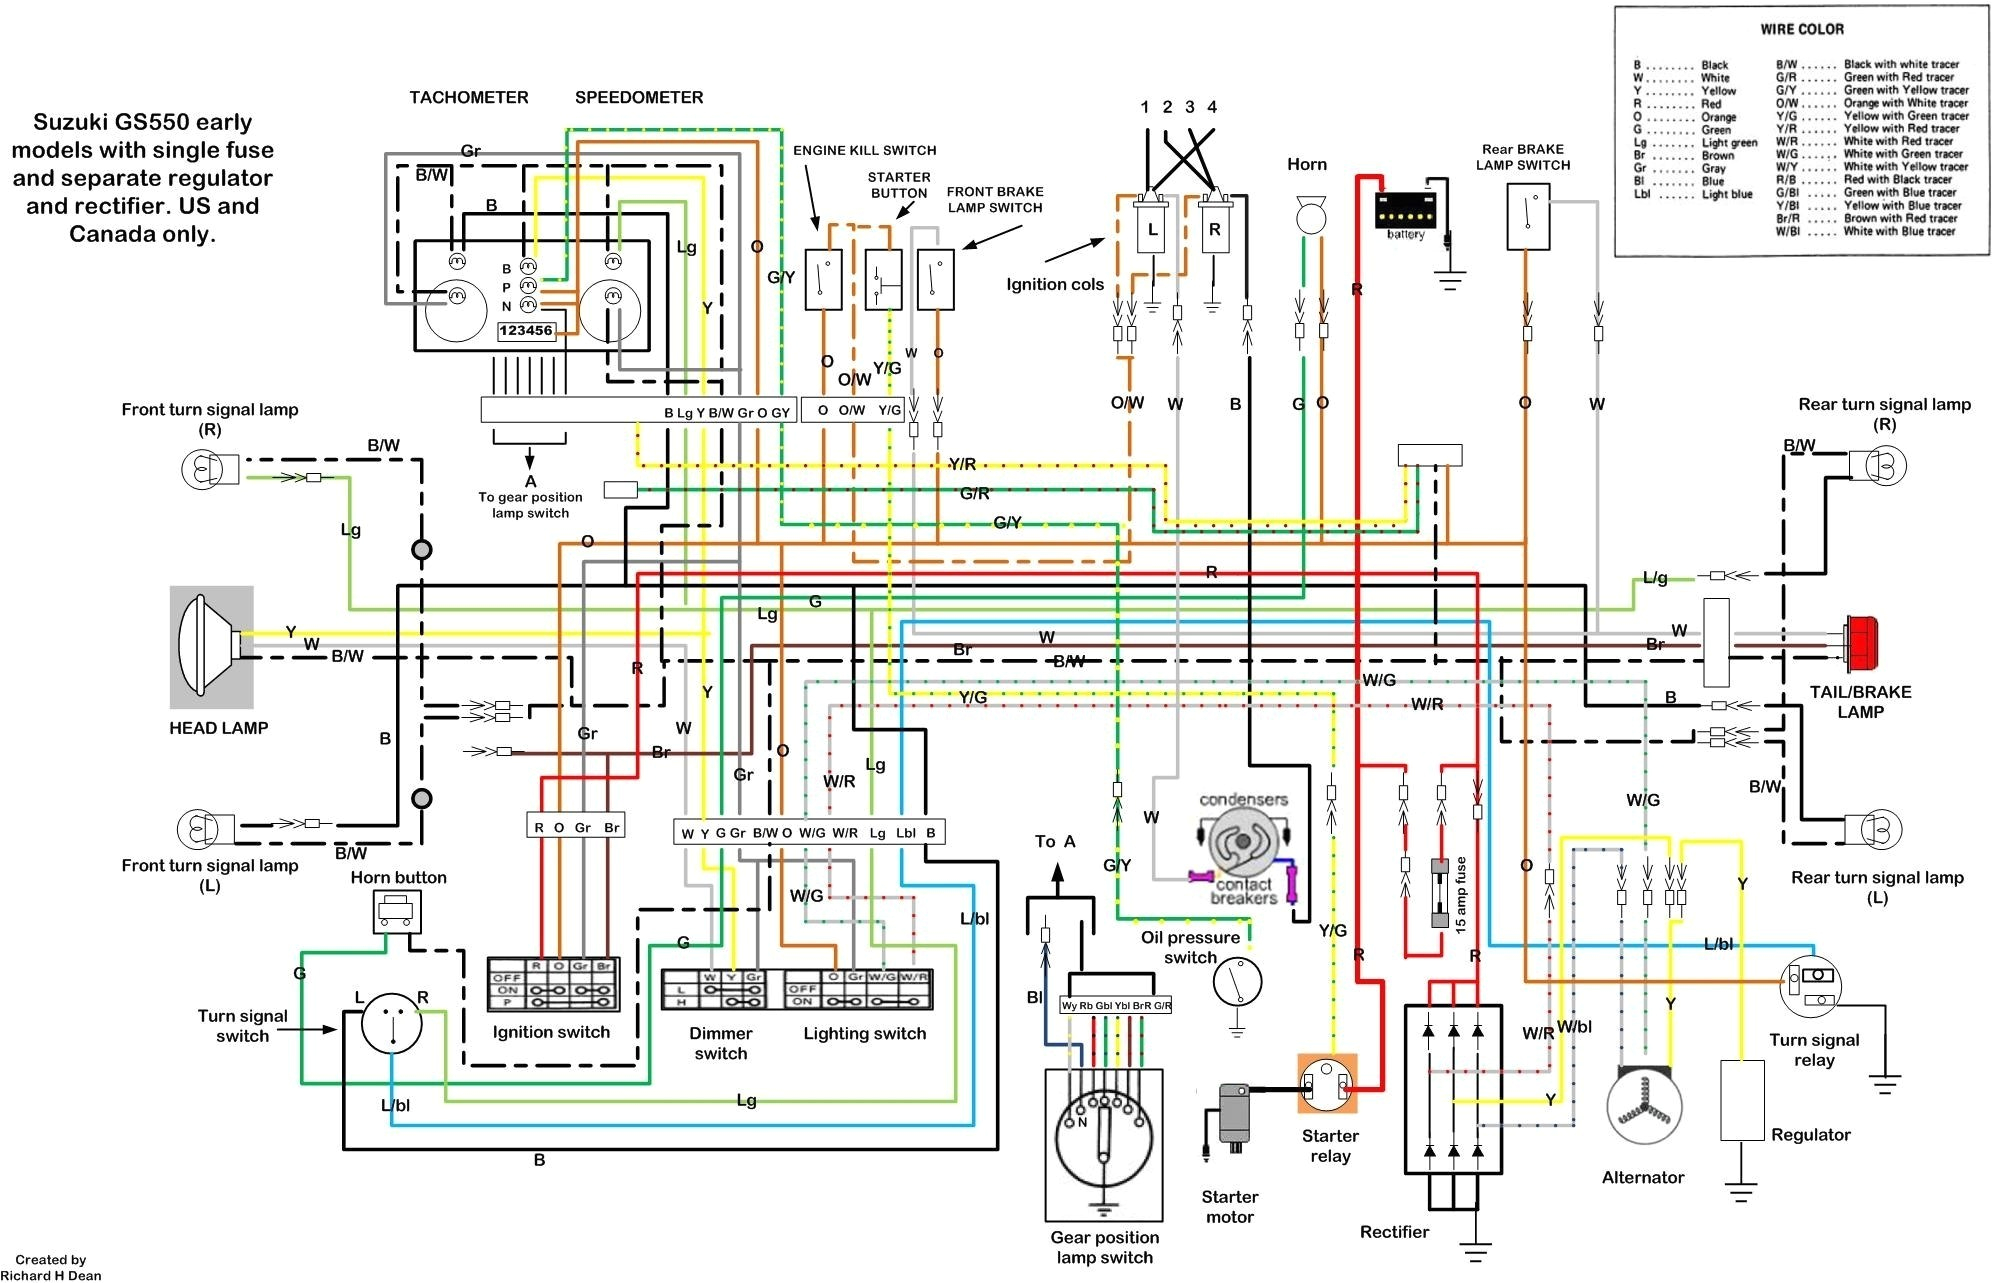 1972 suzuki t500 wiring diagram wiring diagram world 1972 suzuki wire diagram